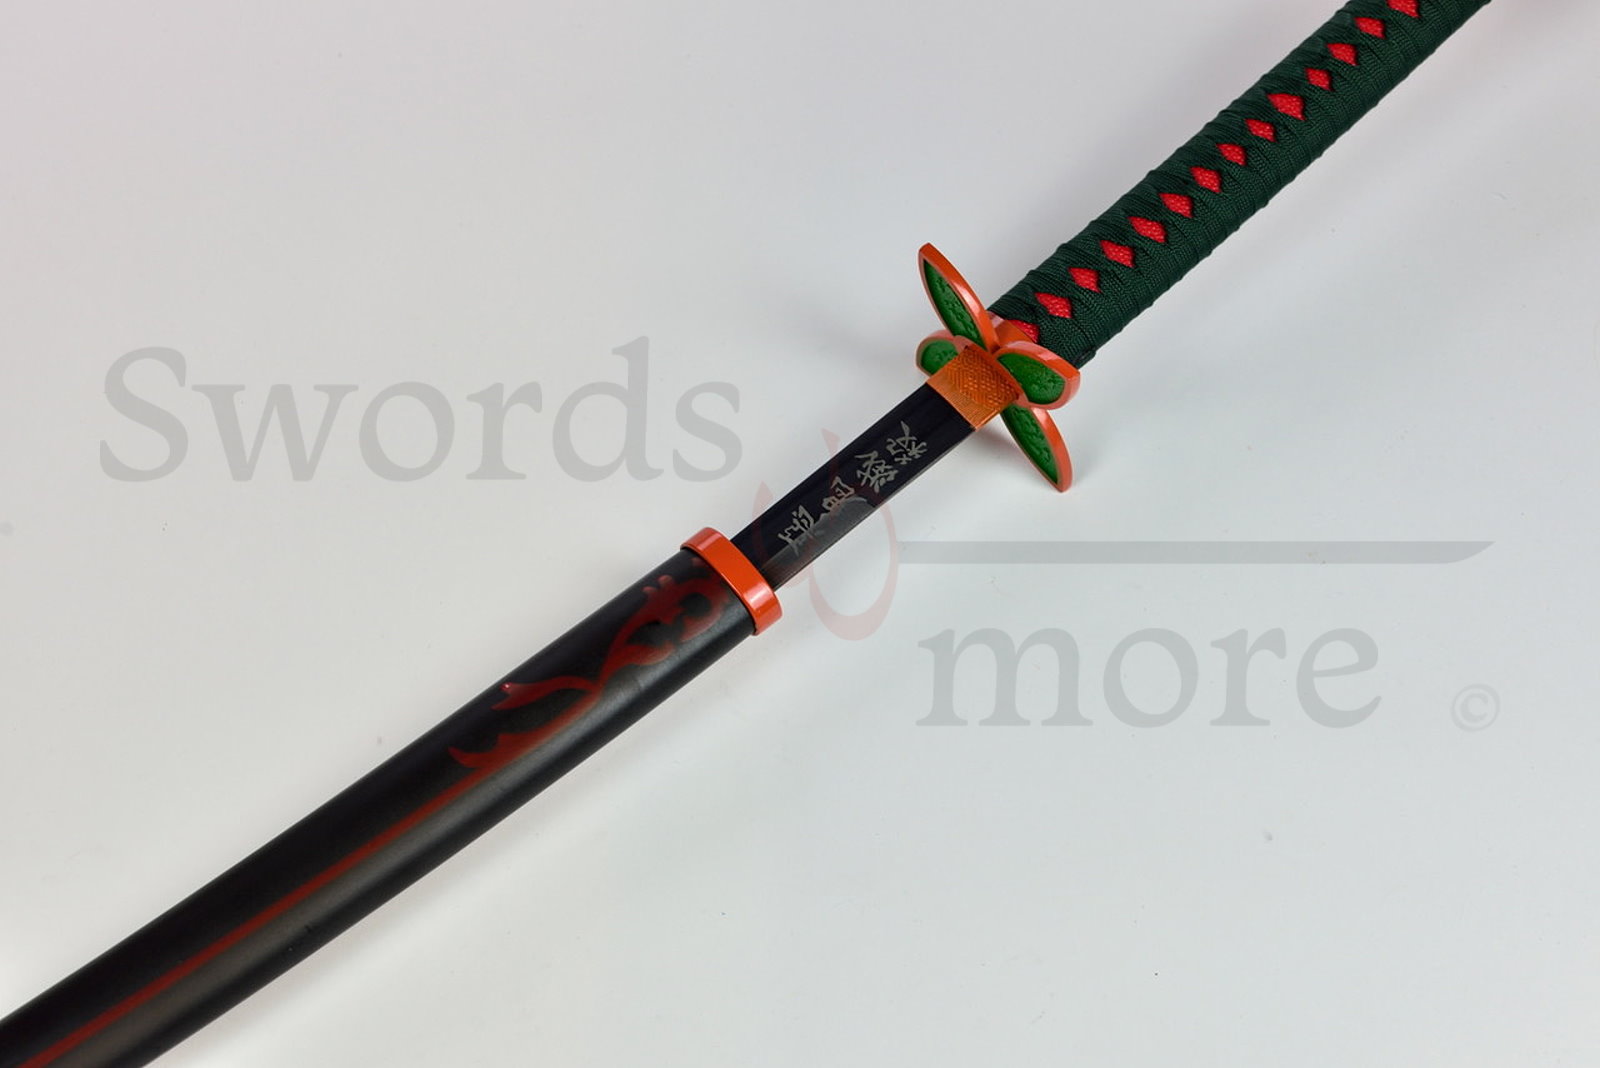 Demon Slayer: Kimetsu no Yaiba - Kochou Shinobu's Sword - handforged